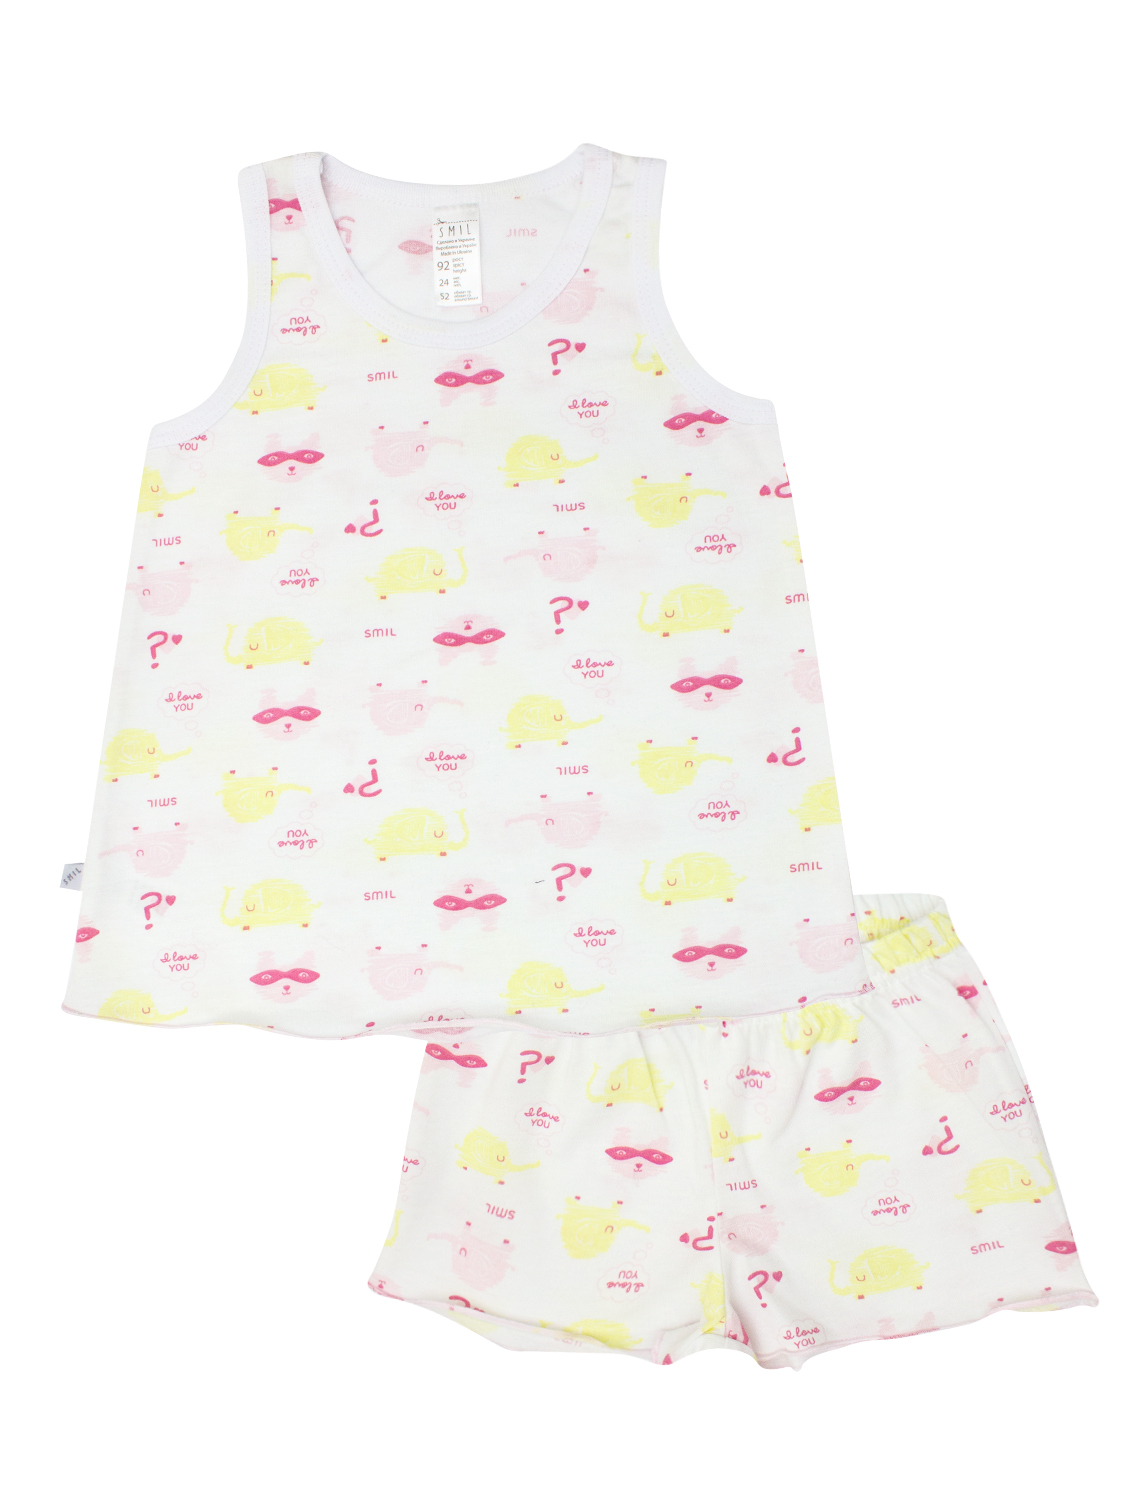 Пижама для девочки, арт. 104408, возраст от 2 до 6 лет